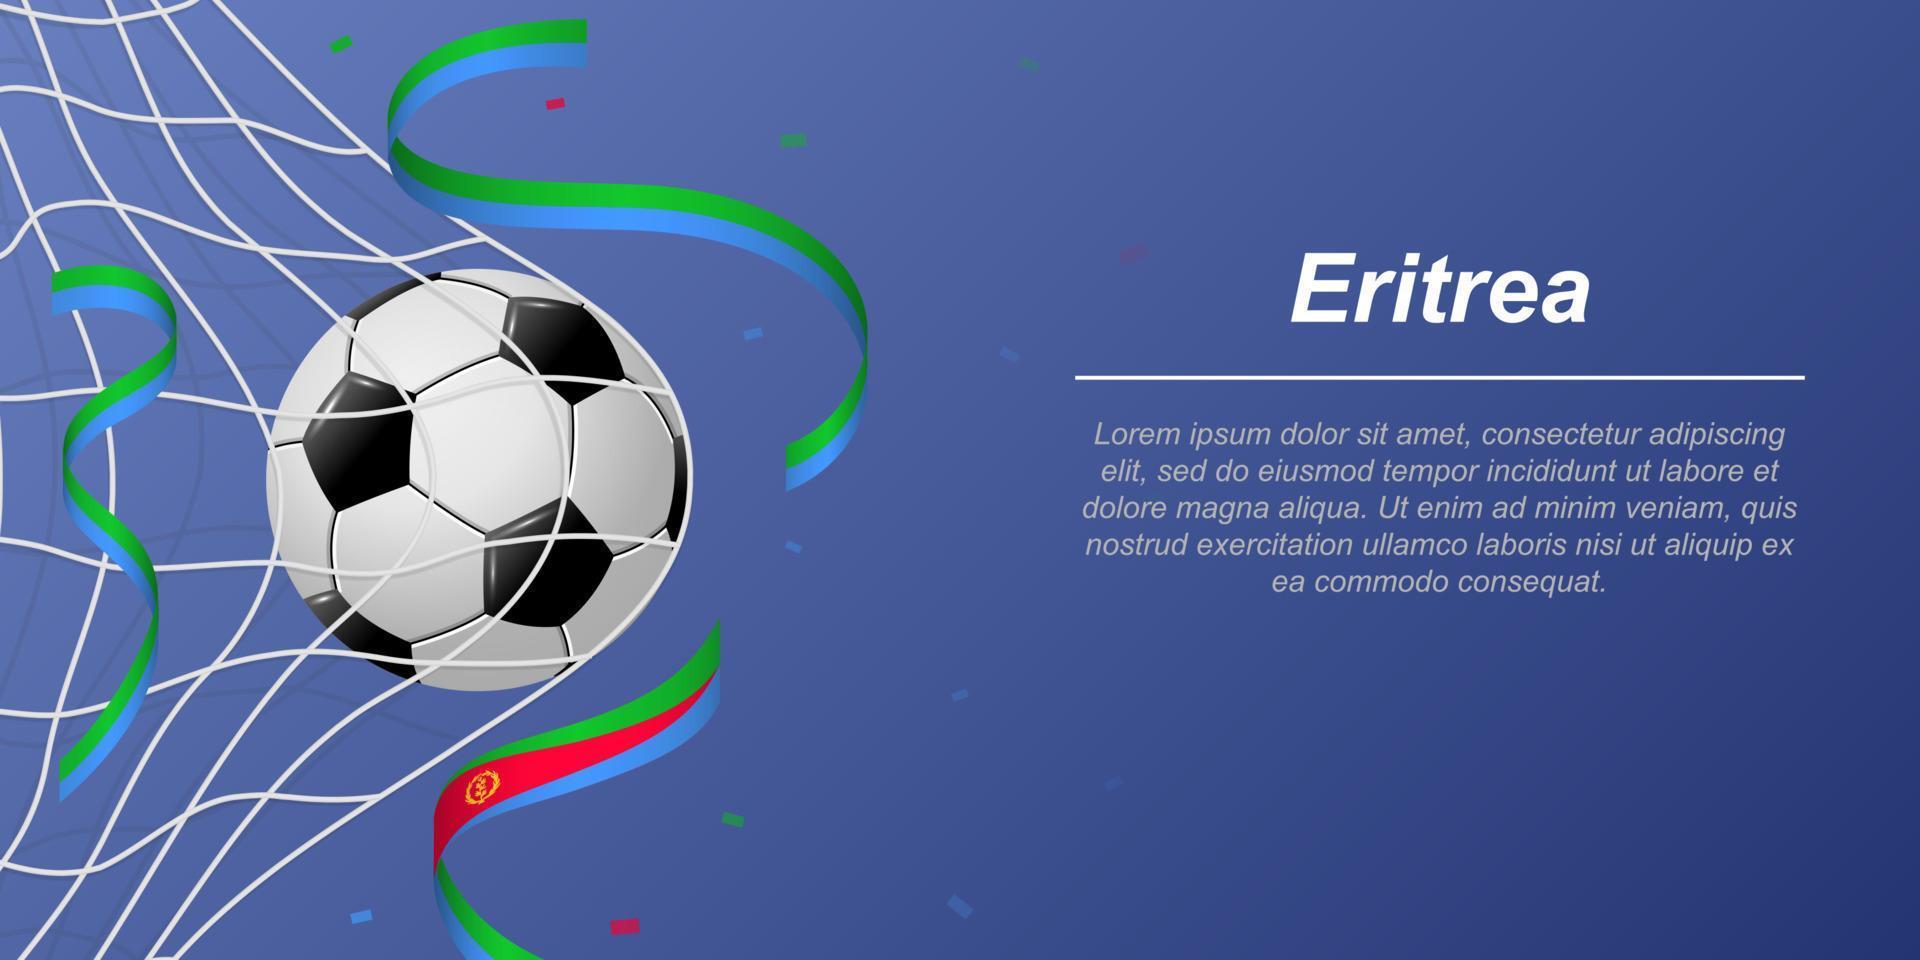 voetbal achtergrond met vliegend linten in kleuren van de vlag van eritrea vector